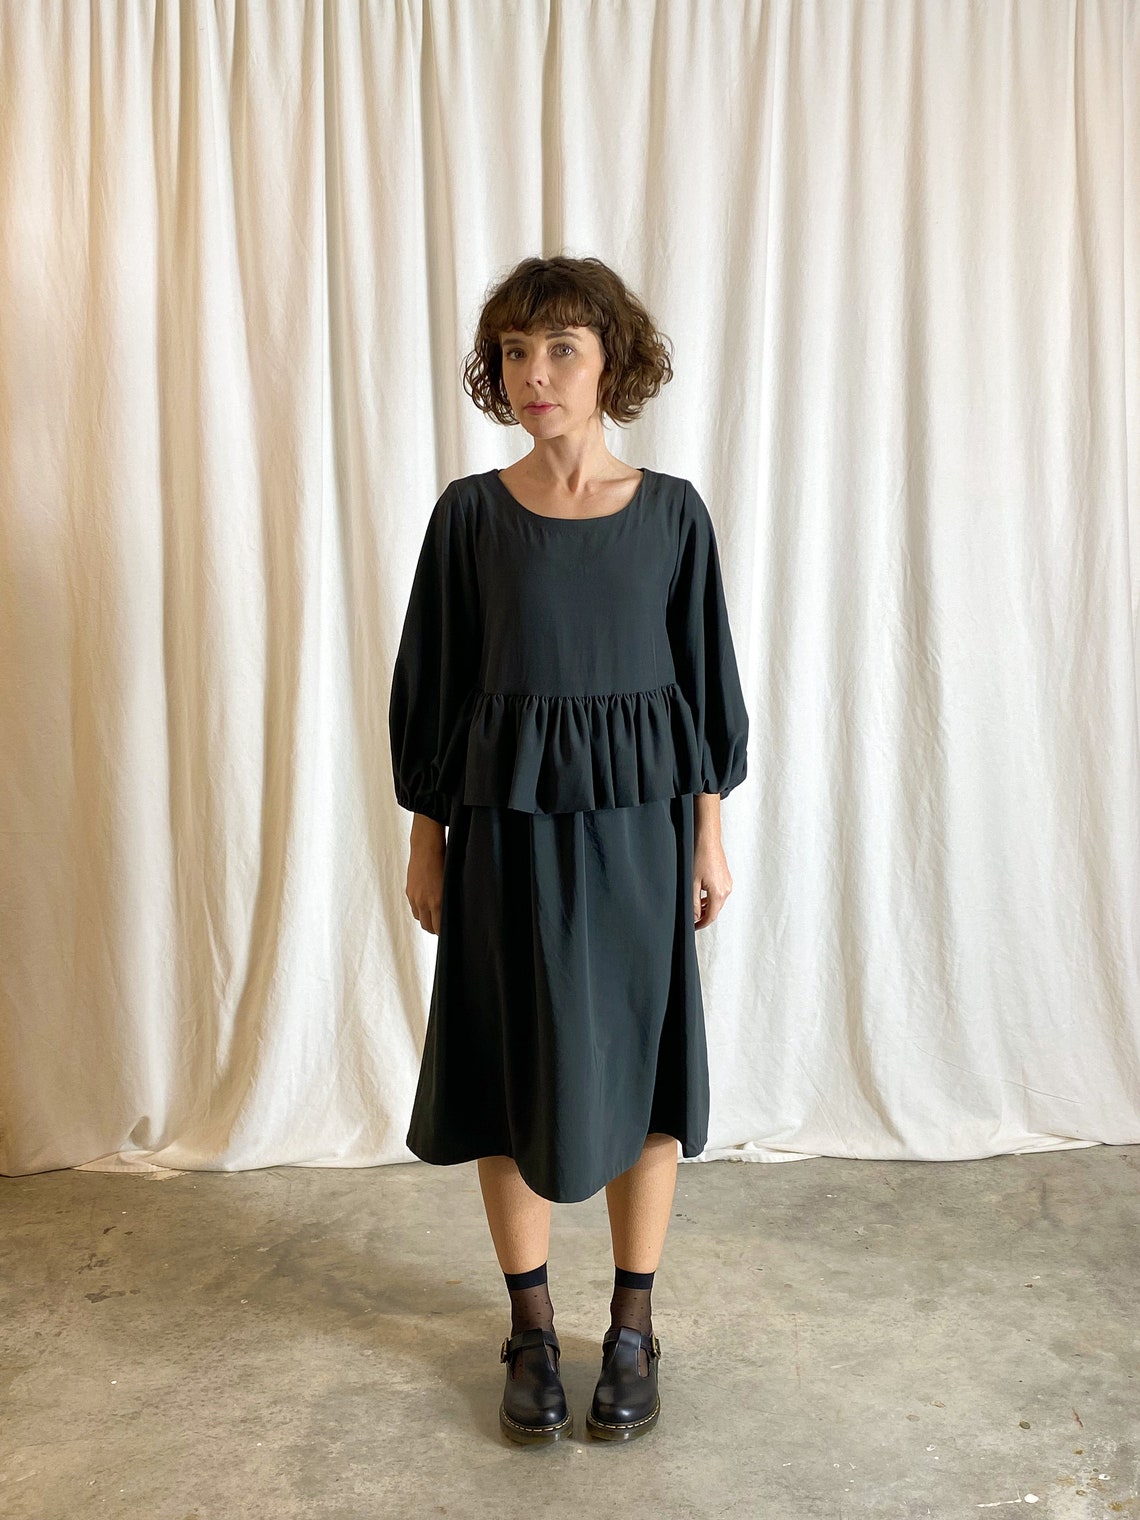 Puff Sleeve Peplum Dress Sewing Pattern | Etsy UK